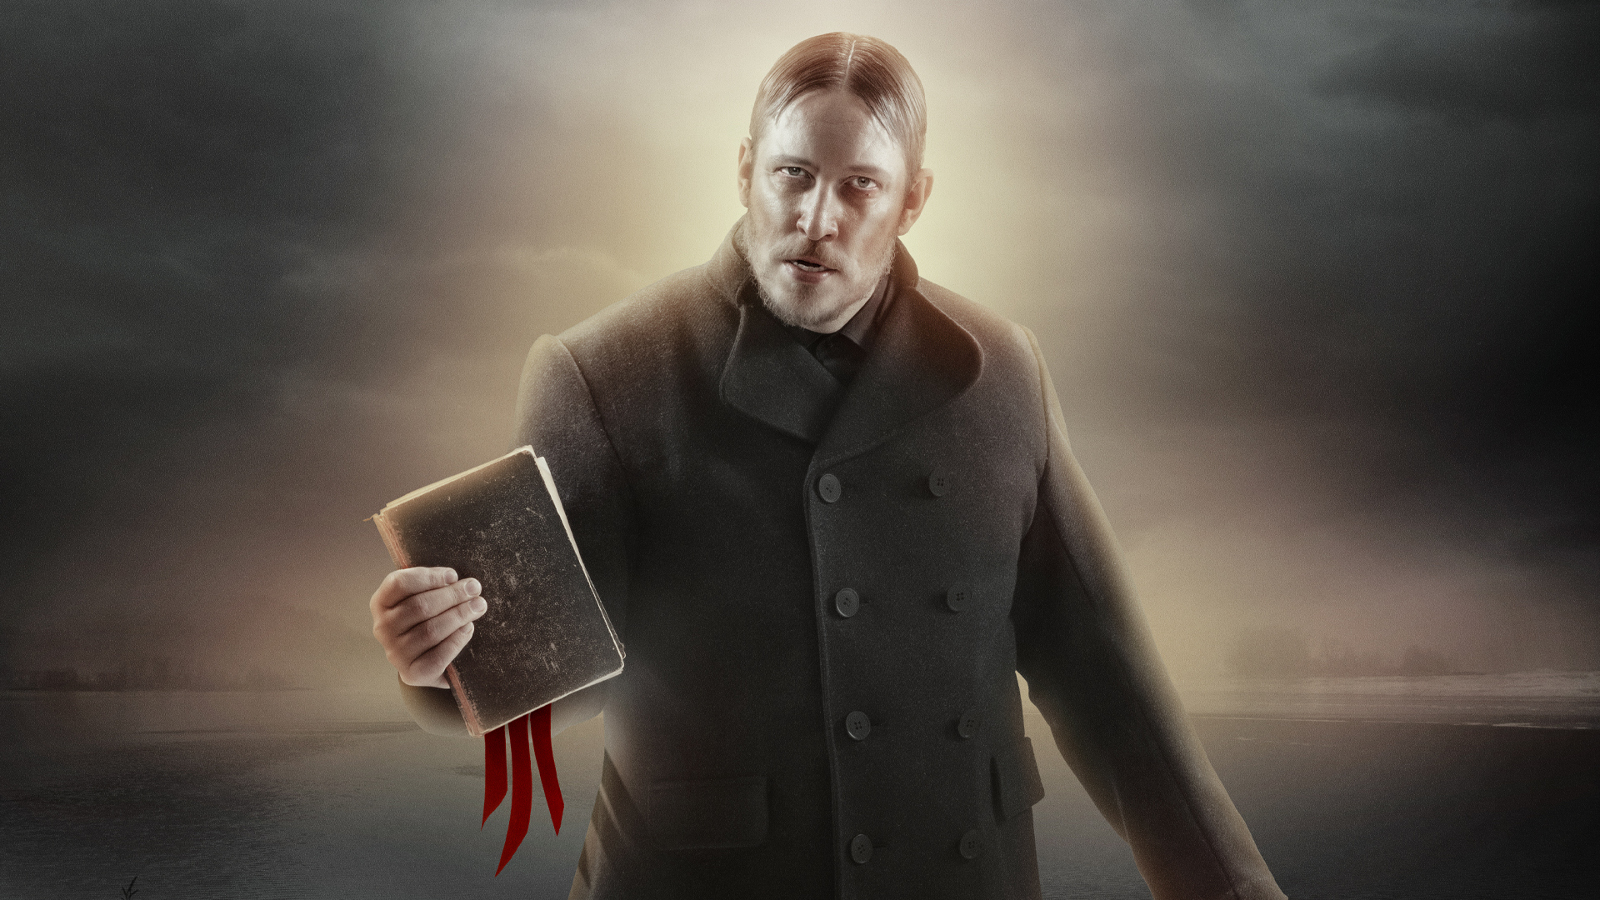 Kuvassa on Mika Kares puolivartalokuvassa Mika Kares ja hän ojentaa kädessään olevaa raamattua eteenpäin. Hänellä on harmaa takki päällään. Kuvan väri on harmaan ruskehtava ja Kareksen ympärillä näkyy valoa.